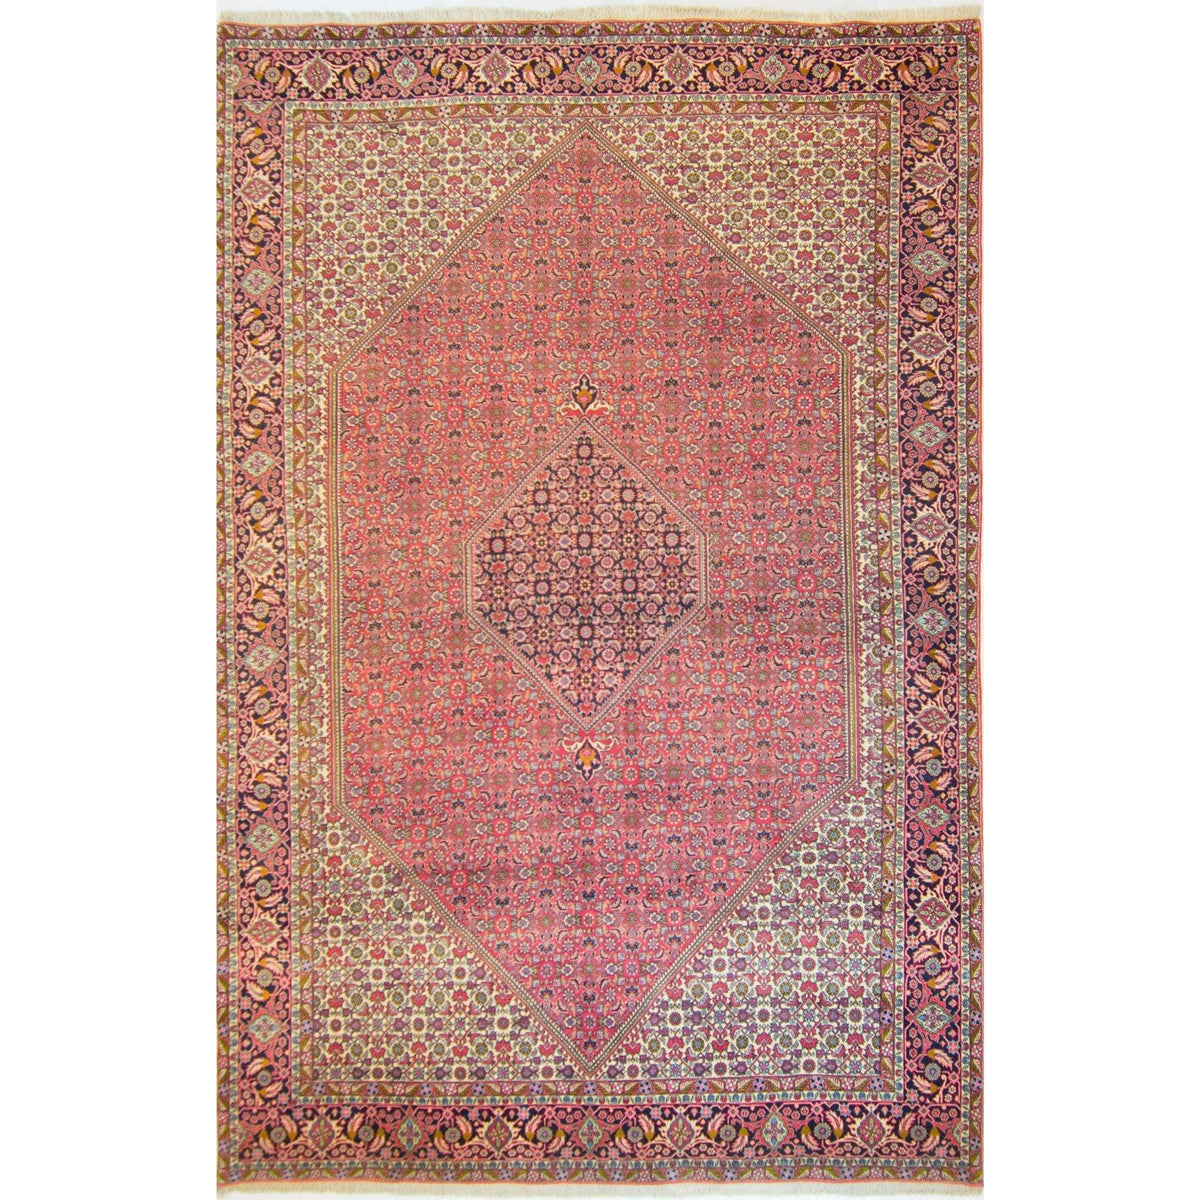 Super Fine Hand-knotted Persian Wool Bijar Rug 245cm x 360cm